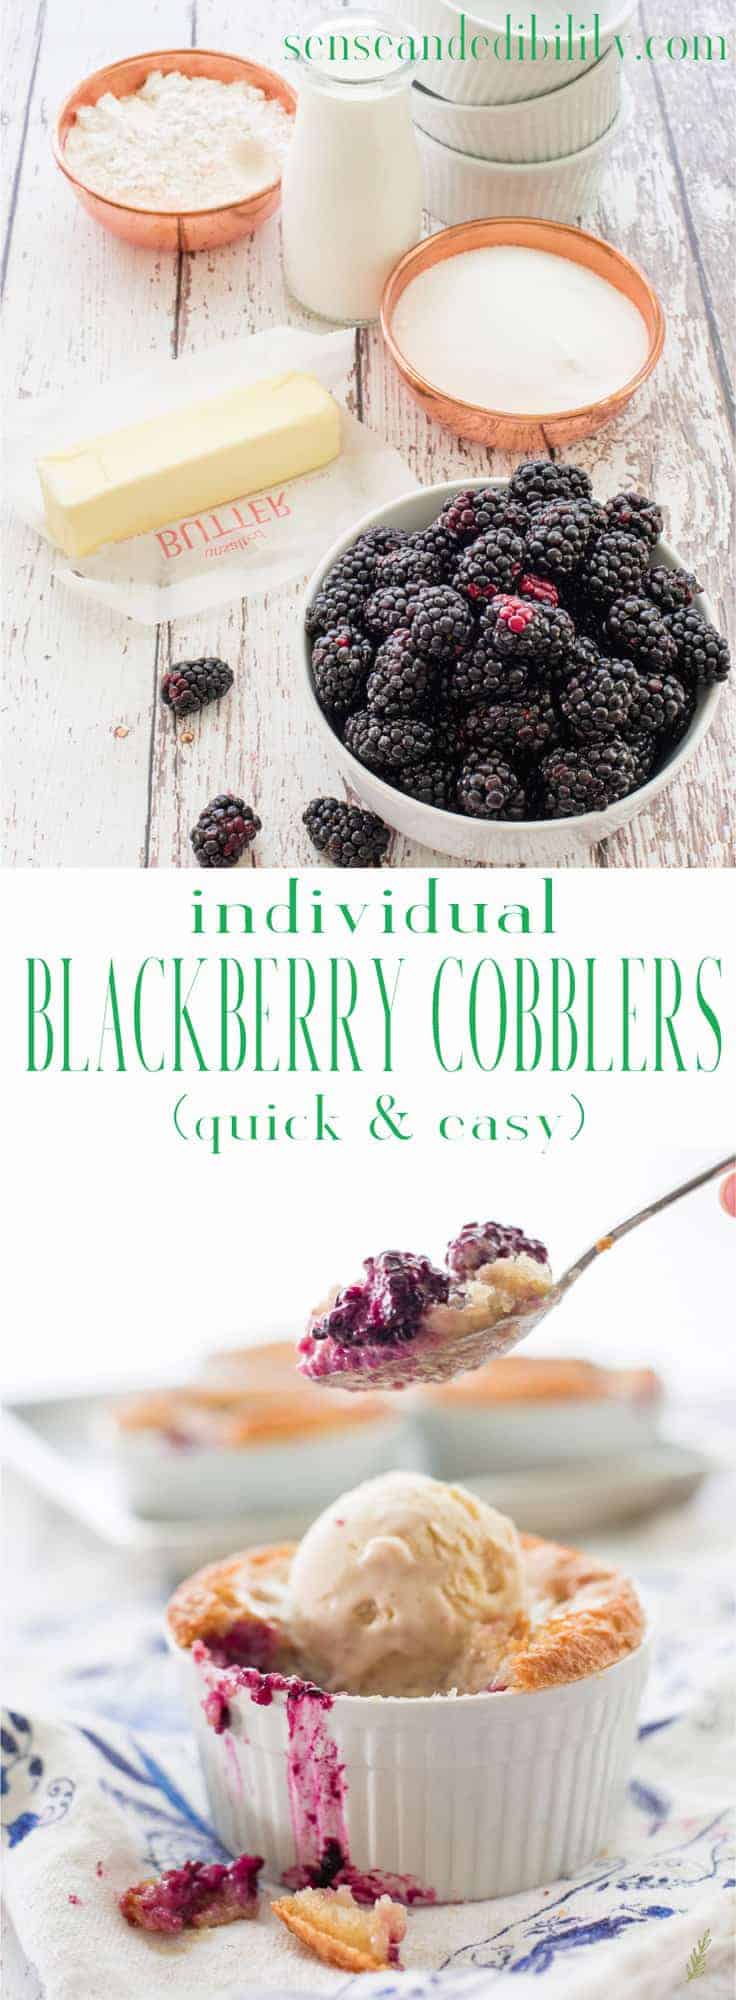 Blackberry Cobblers servírují plody léta nejvíce delikátním způsobem. Přelité těstíkovou krustou, tento dezert je dokonalým sladkým zakončením vašich letních jídel. Nezapomeňte na Velkorysý Kopeček zmrazeného pudinku, který s ním podáváte! # blackberrycobbler #cobbler #berrycobbler #dezert #alamode via @ediblesense